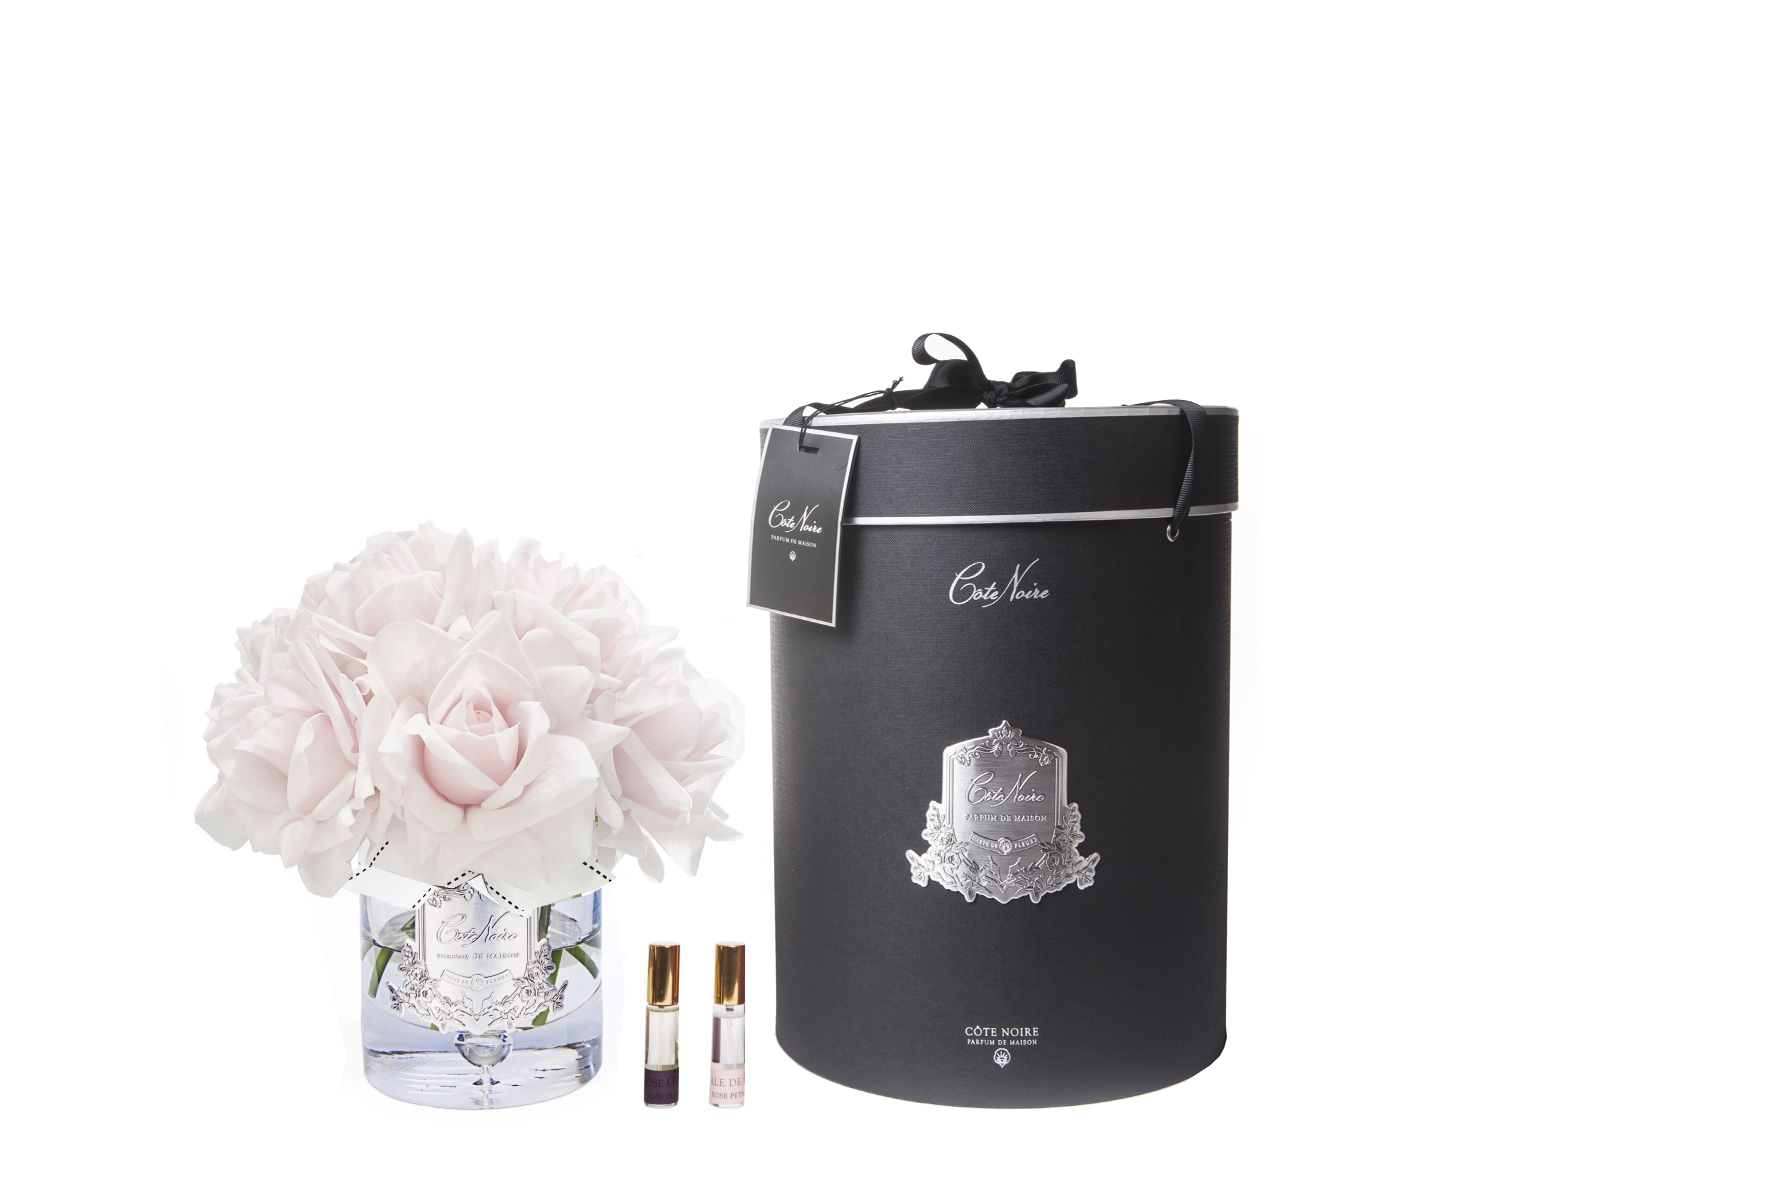 13 rosa rosen arrangiert in einer edlen glasvase, zwei parfumsprays und eine luxurioese runde geschenkbox in schwarz.